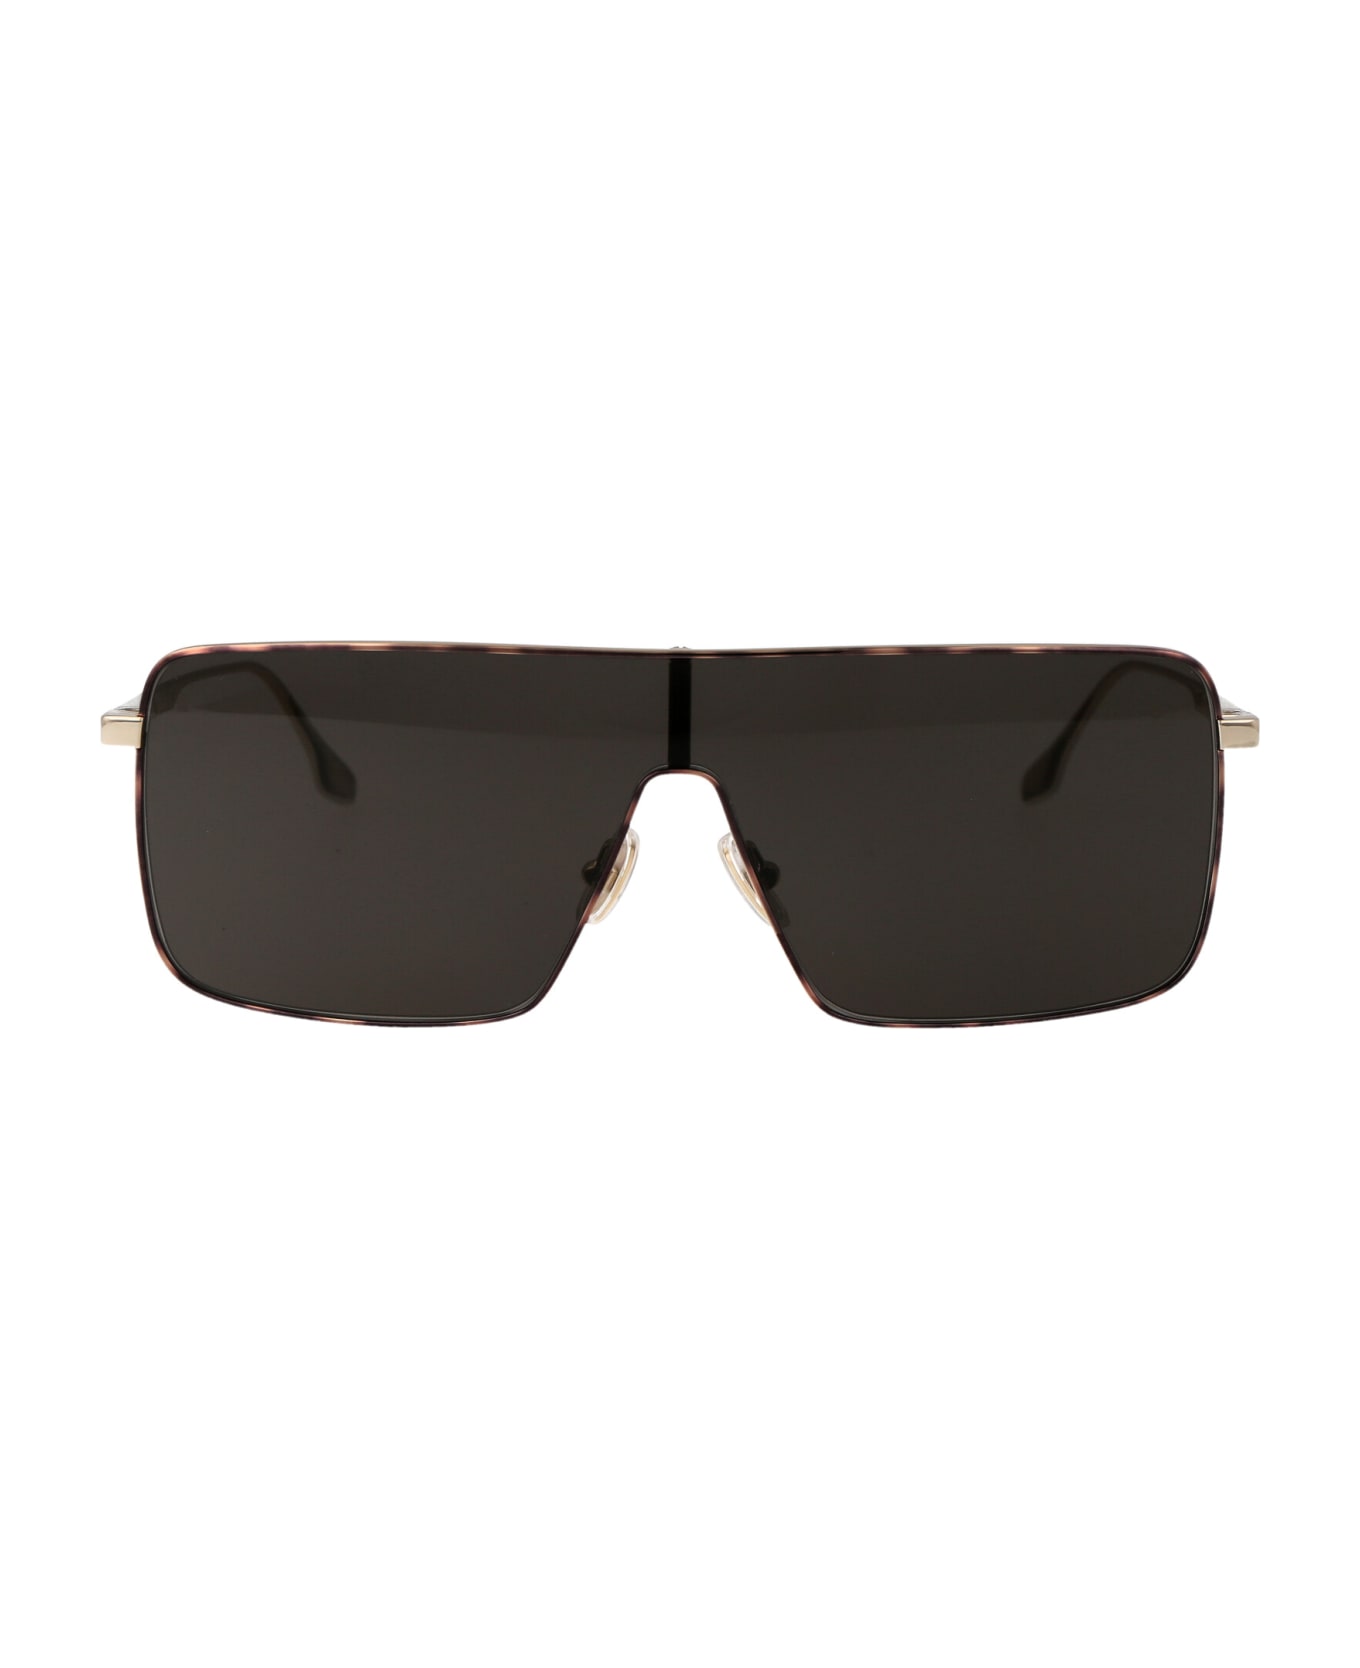 Victoria Beckham Vb238s Sunglasses - 701 GOLD/SMOKE